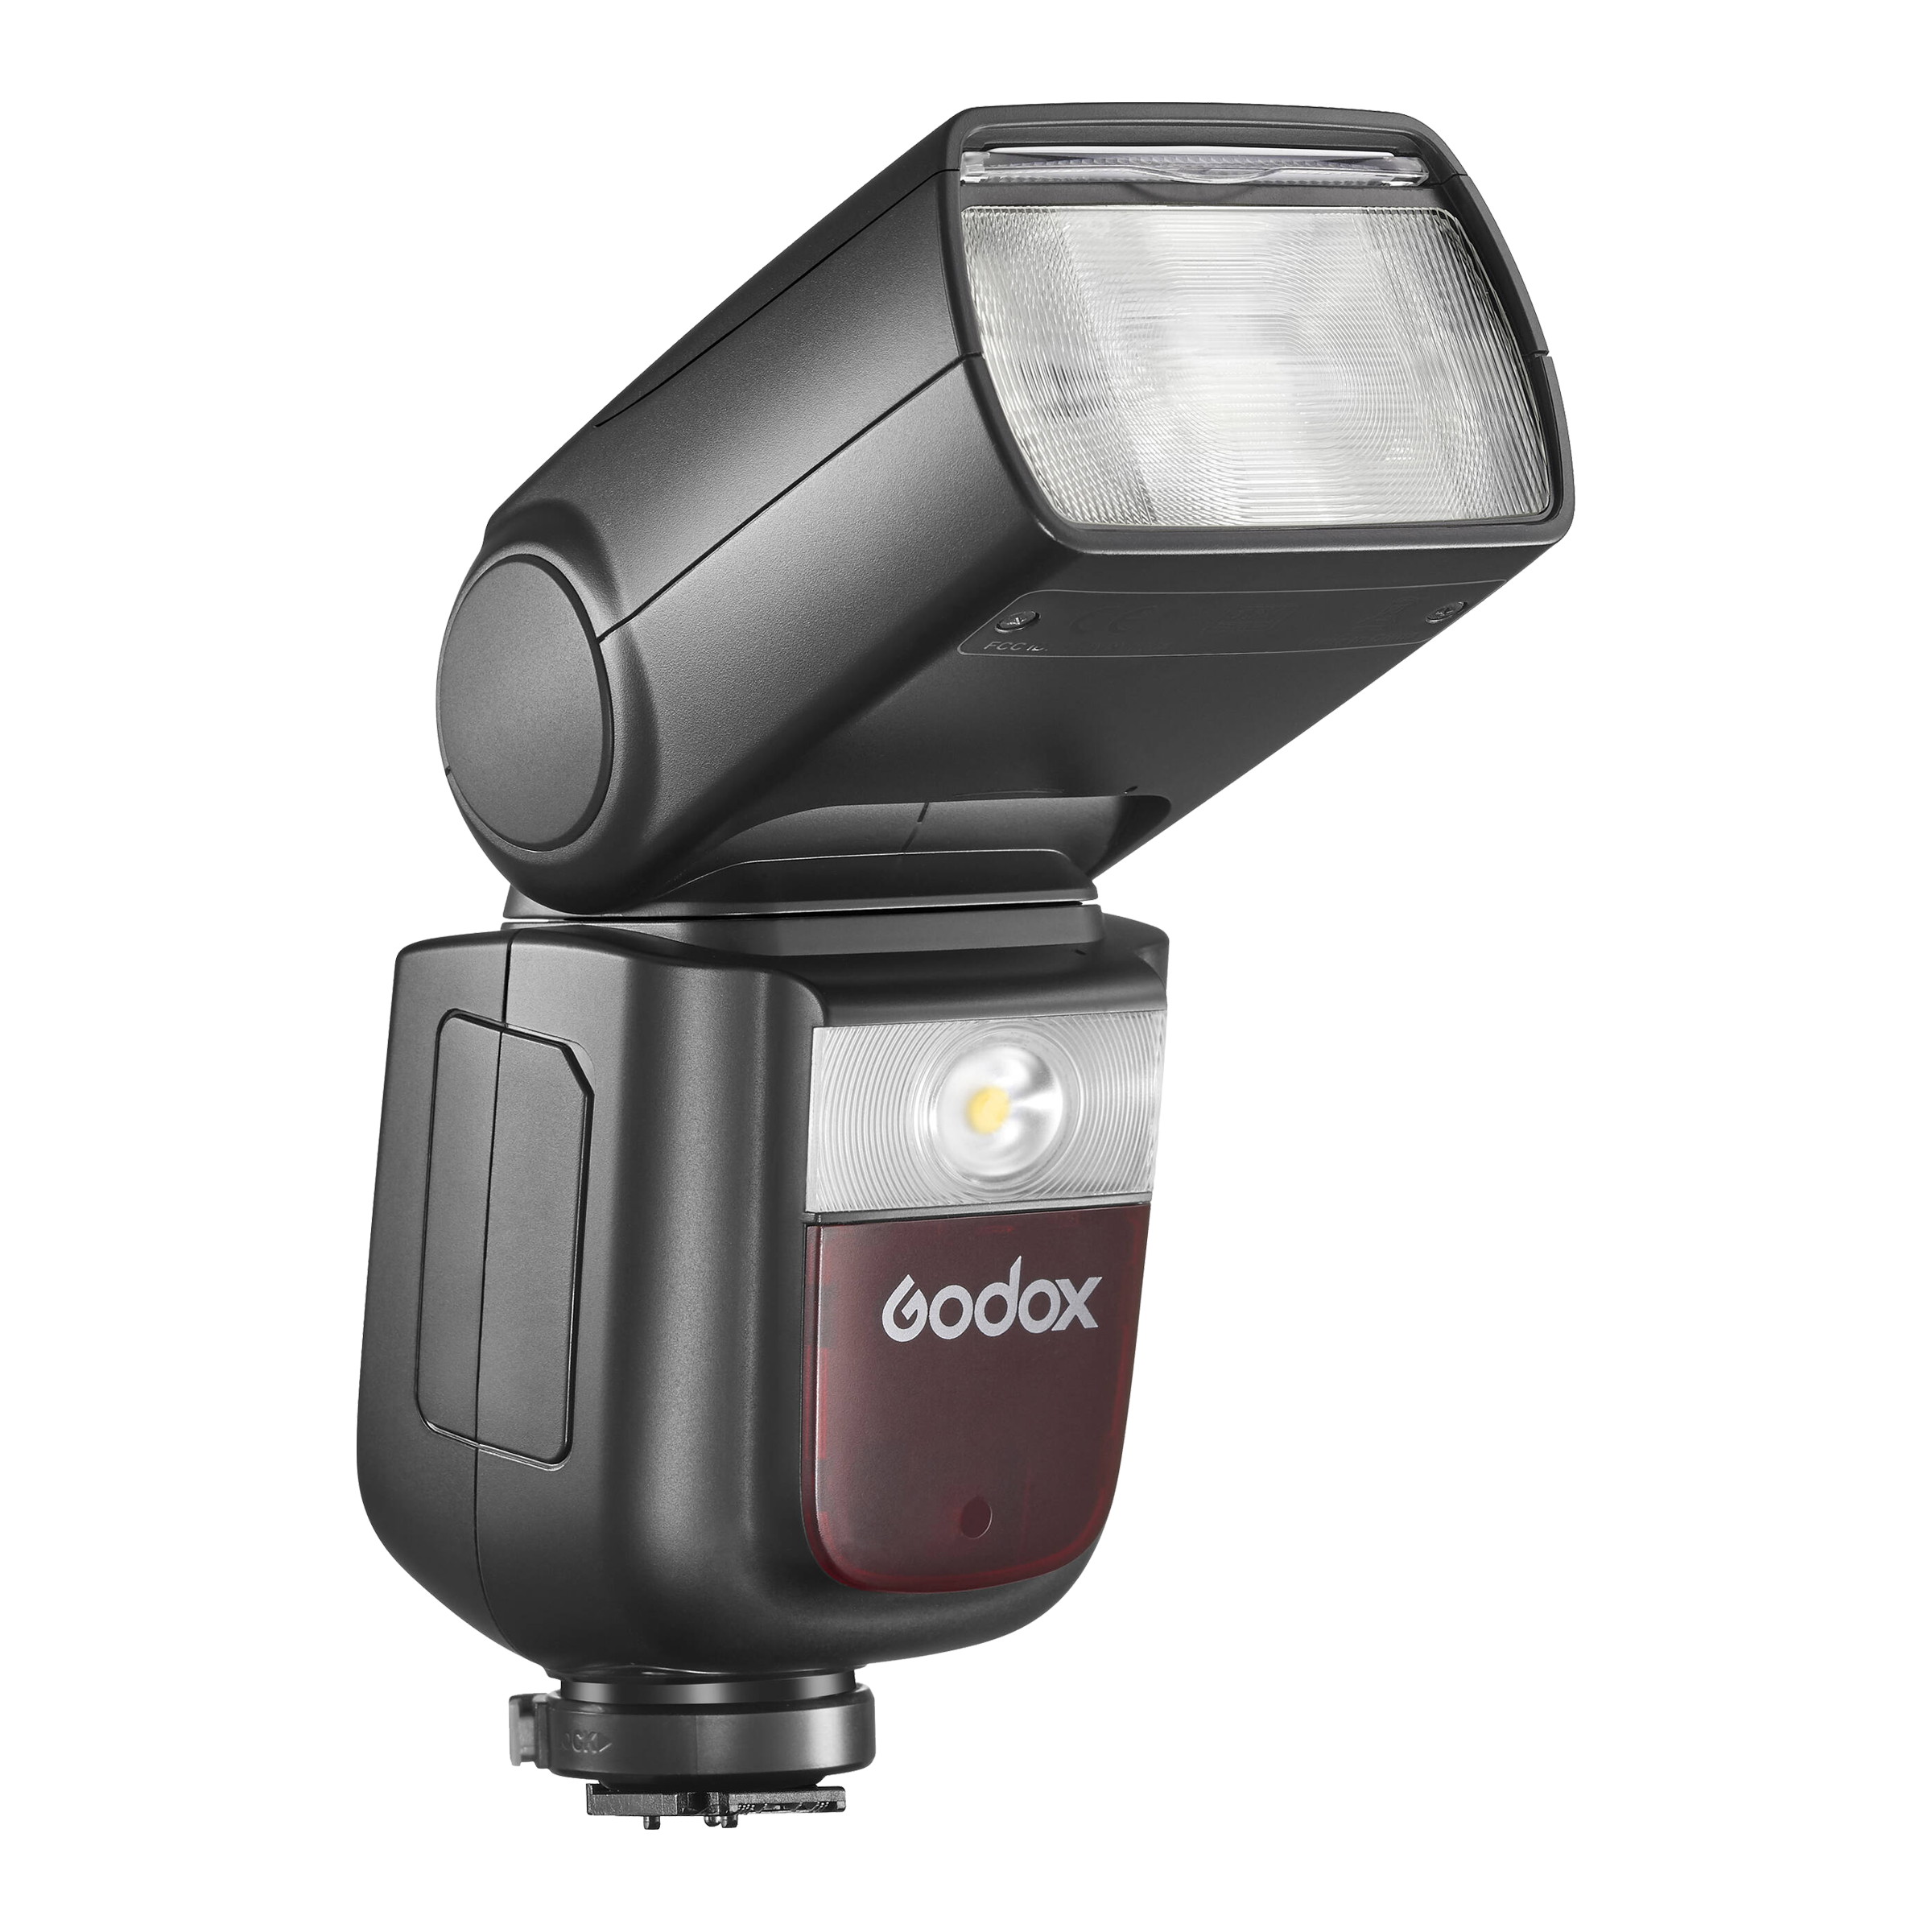 Godox V860IIIS Kit Flash Speedlite for Sony (10 Levels LED Modelling Lamp)